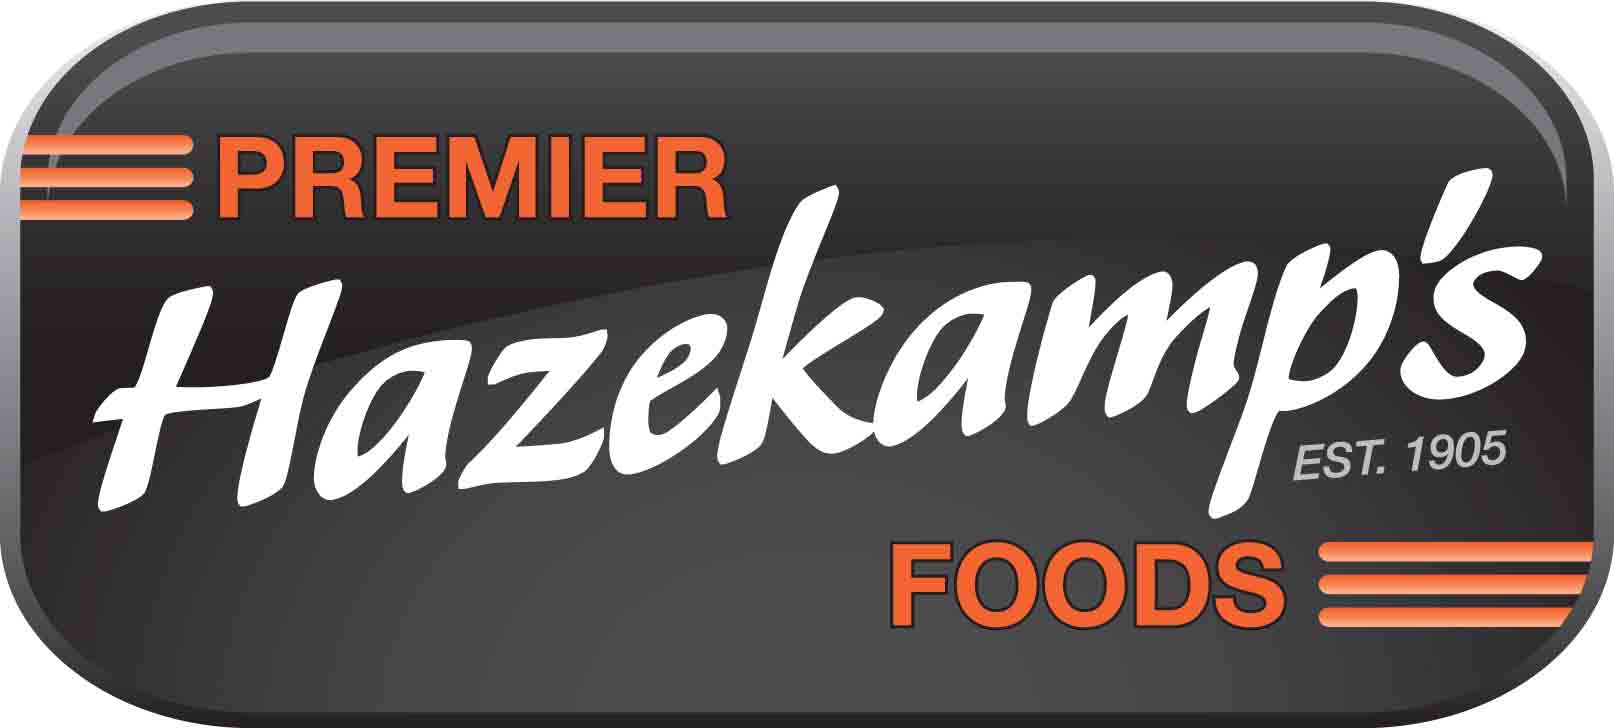 Hazekamp Premier Foods